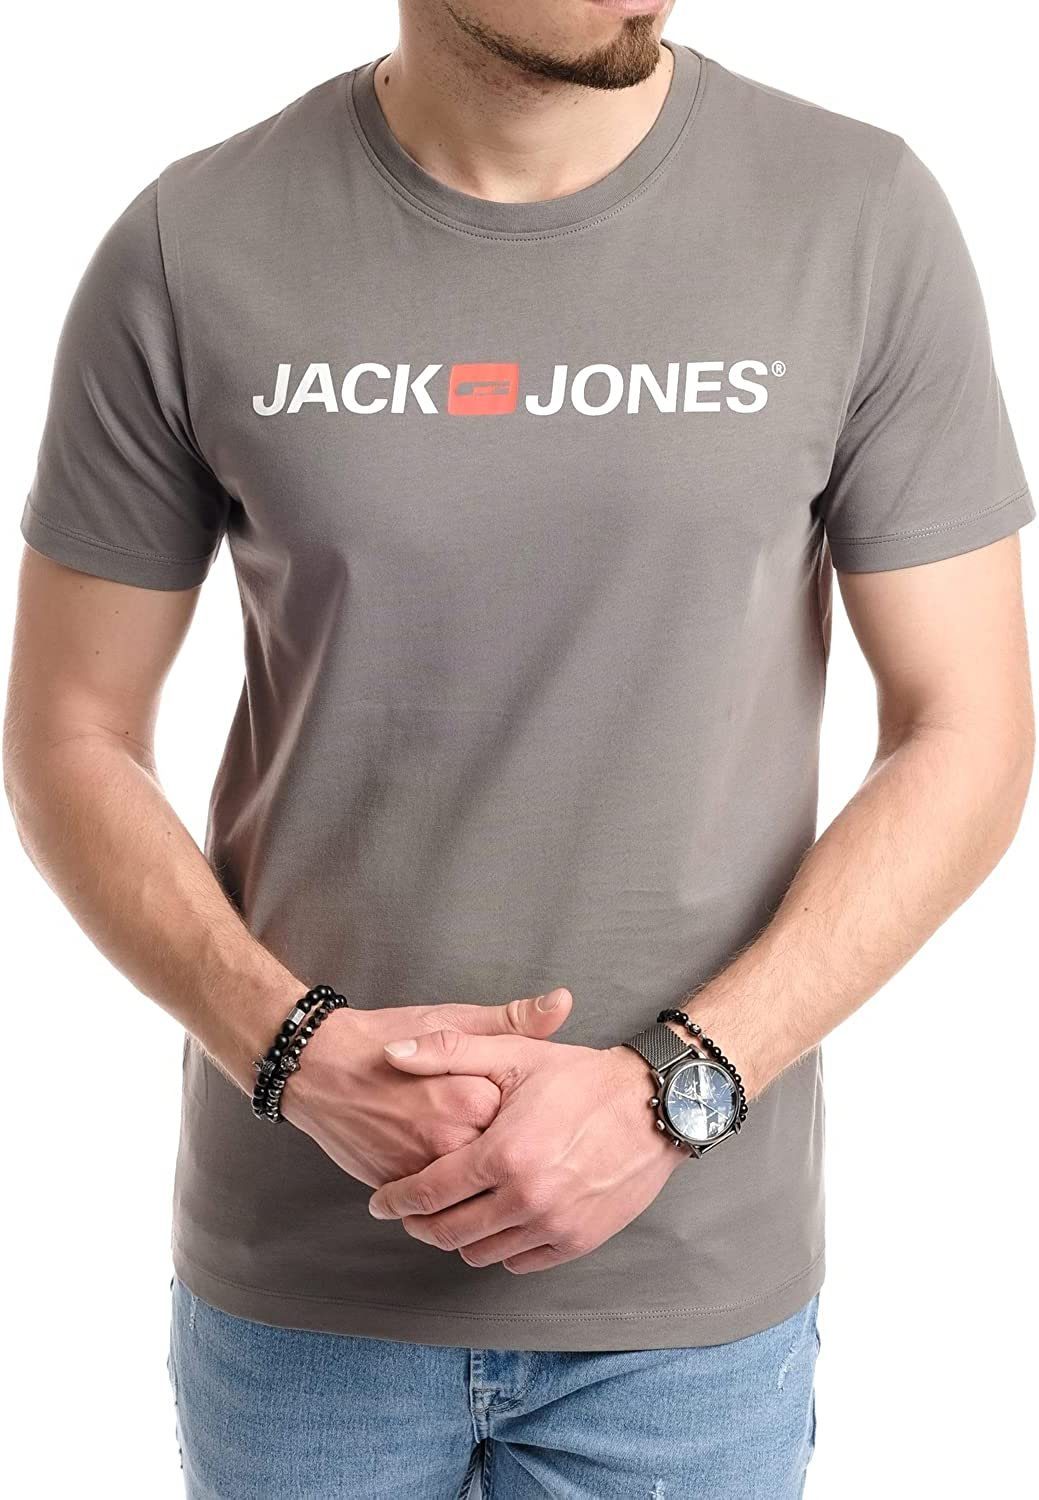 Sedona Sage & Baumwolle Jack aus Jones Rundhalsausschnitt, mit Print-Shirt